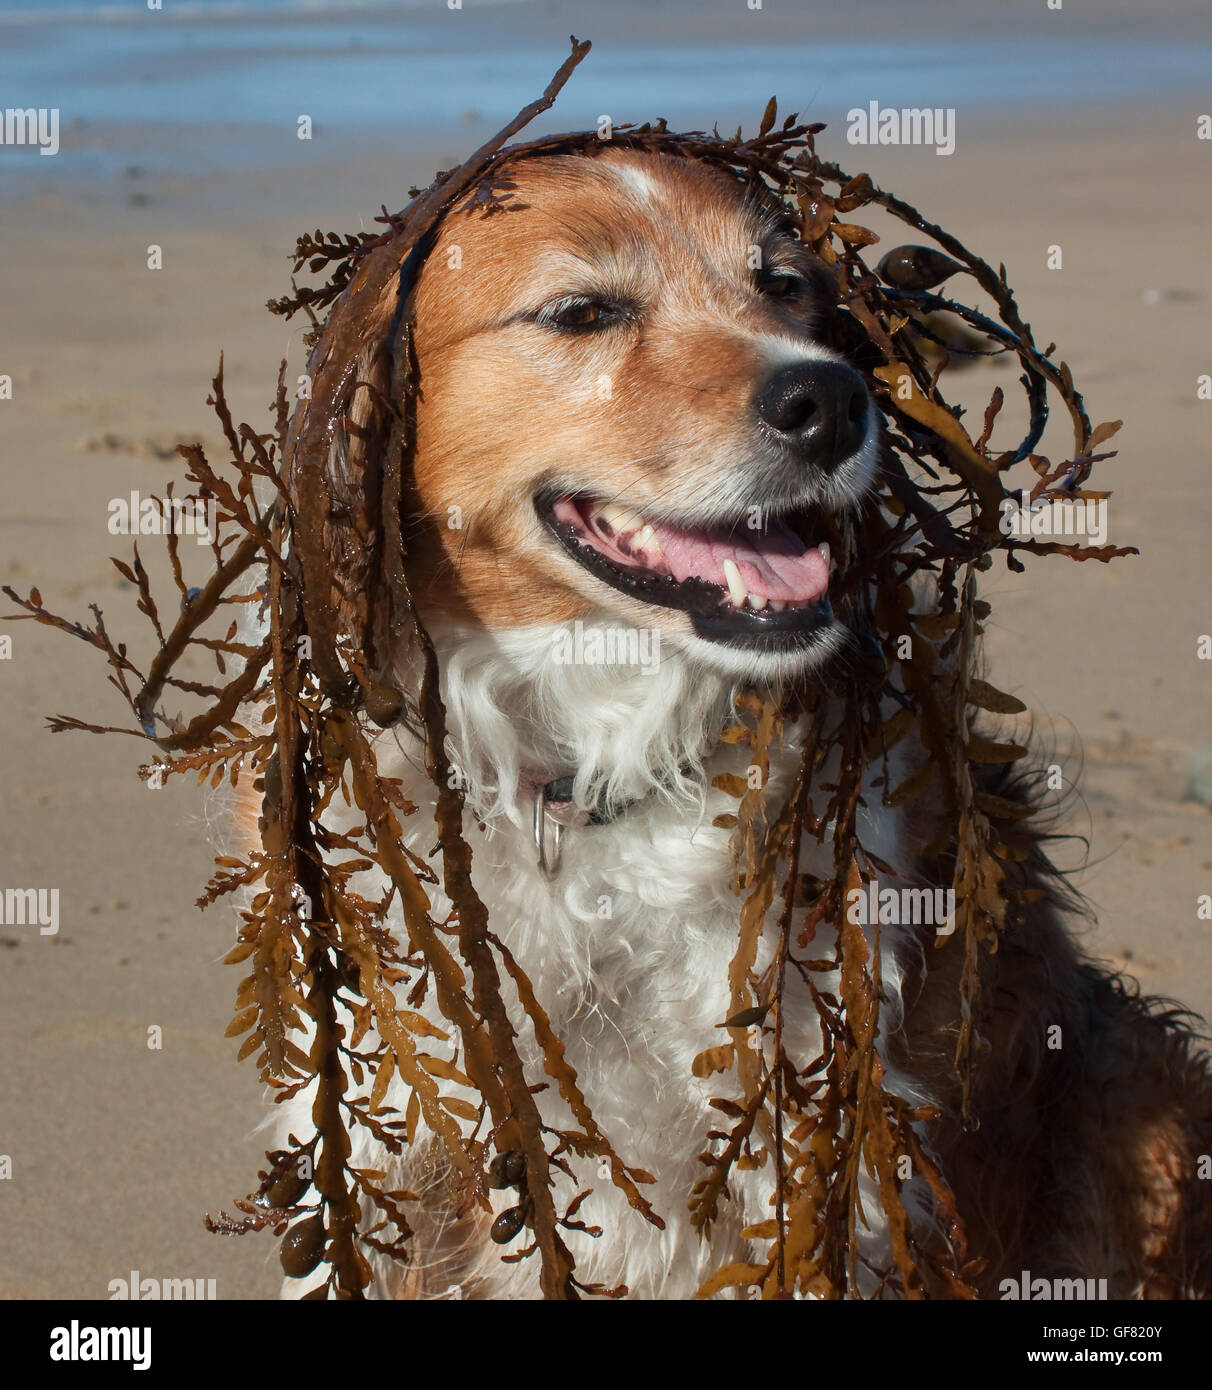 Drôle d'humour chien photo - rouge et blanc moelleux collie chien à la plage avec des algues sur la tête Banque D'Images